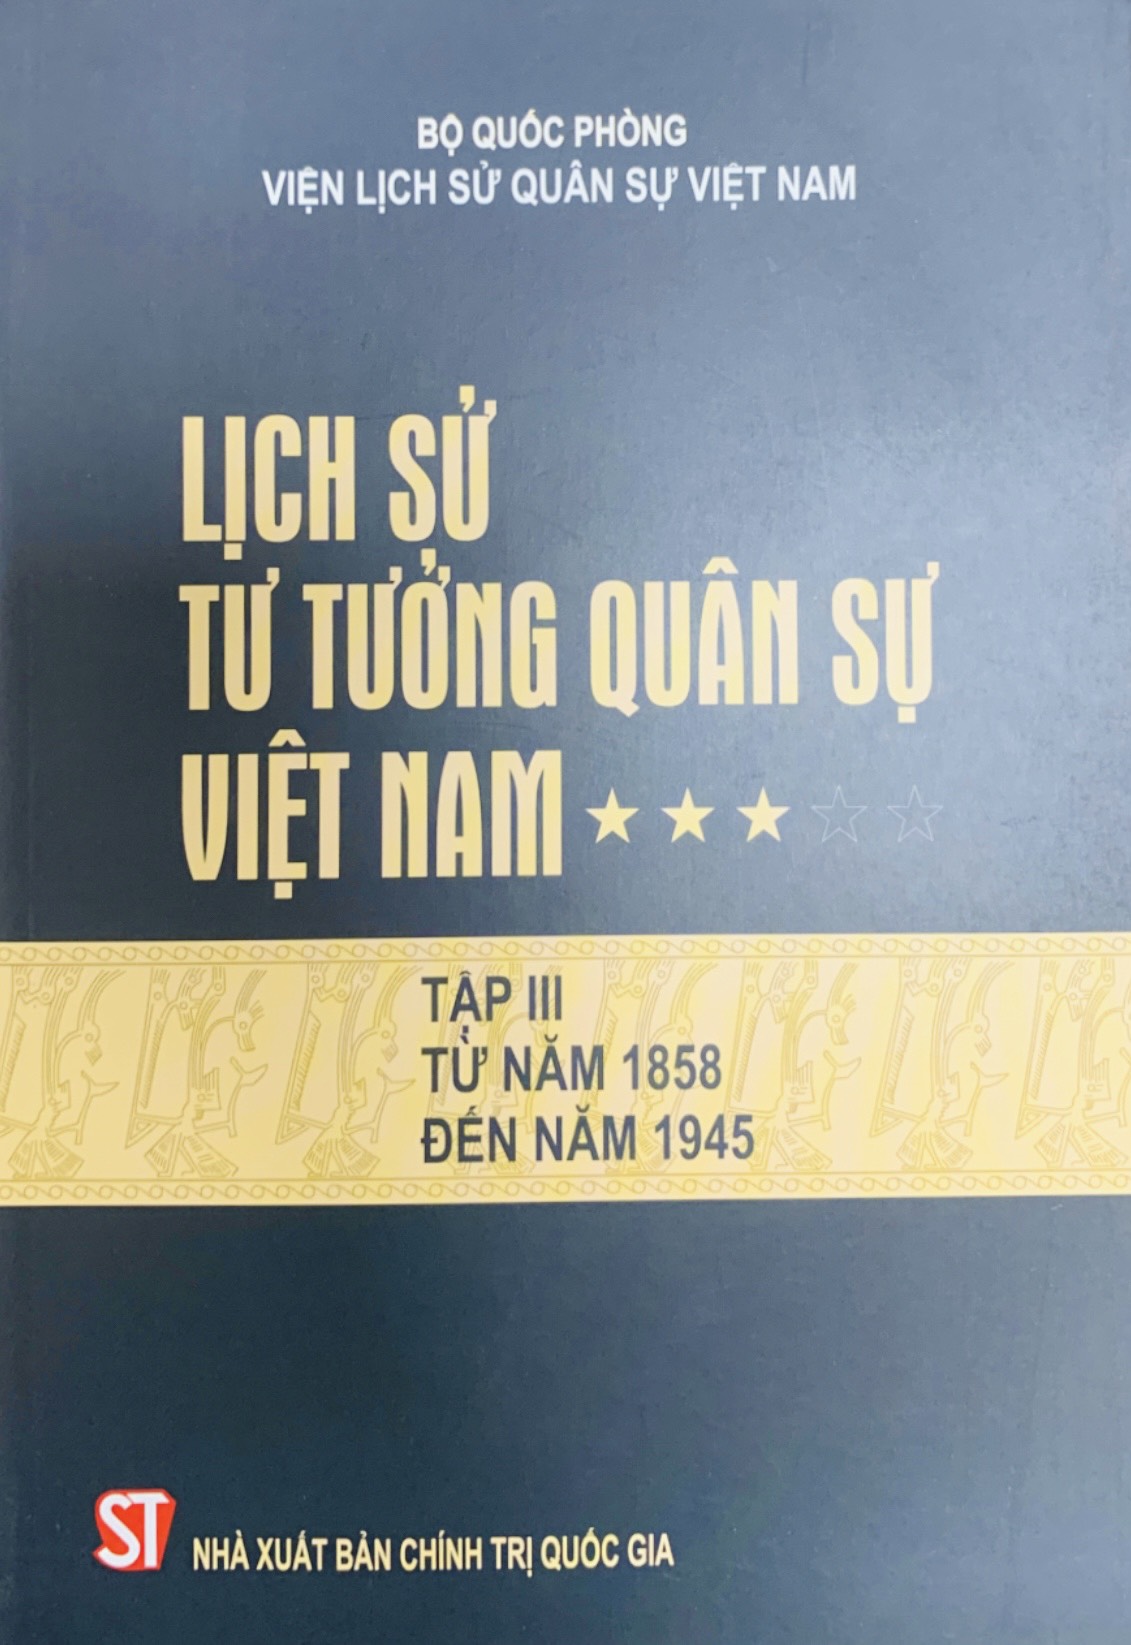 Lịch sử tư tưởng quân sự Việt Nam - Tập III: Từ năm 1858 đến năm 1945